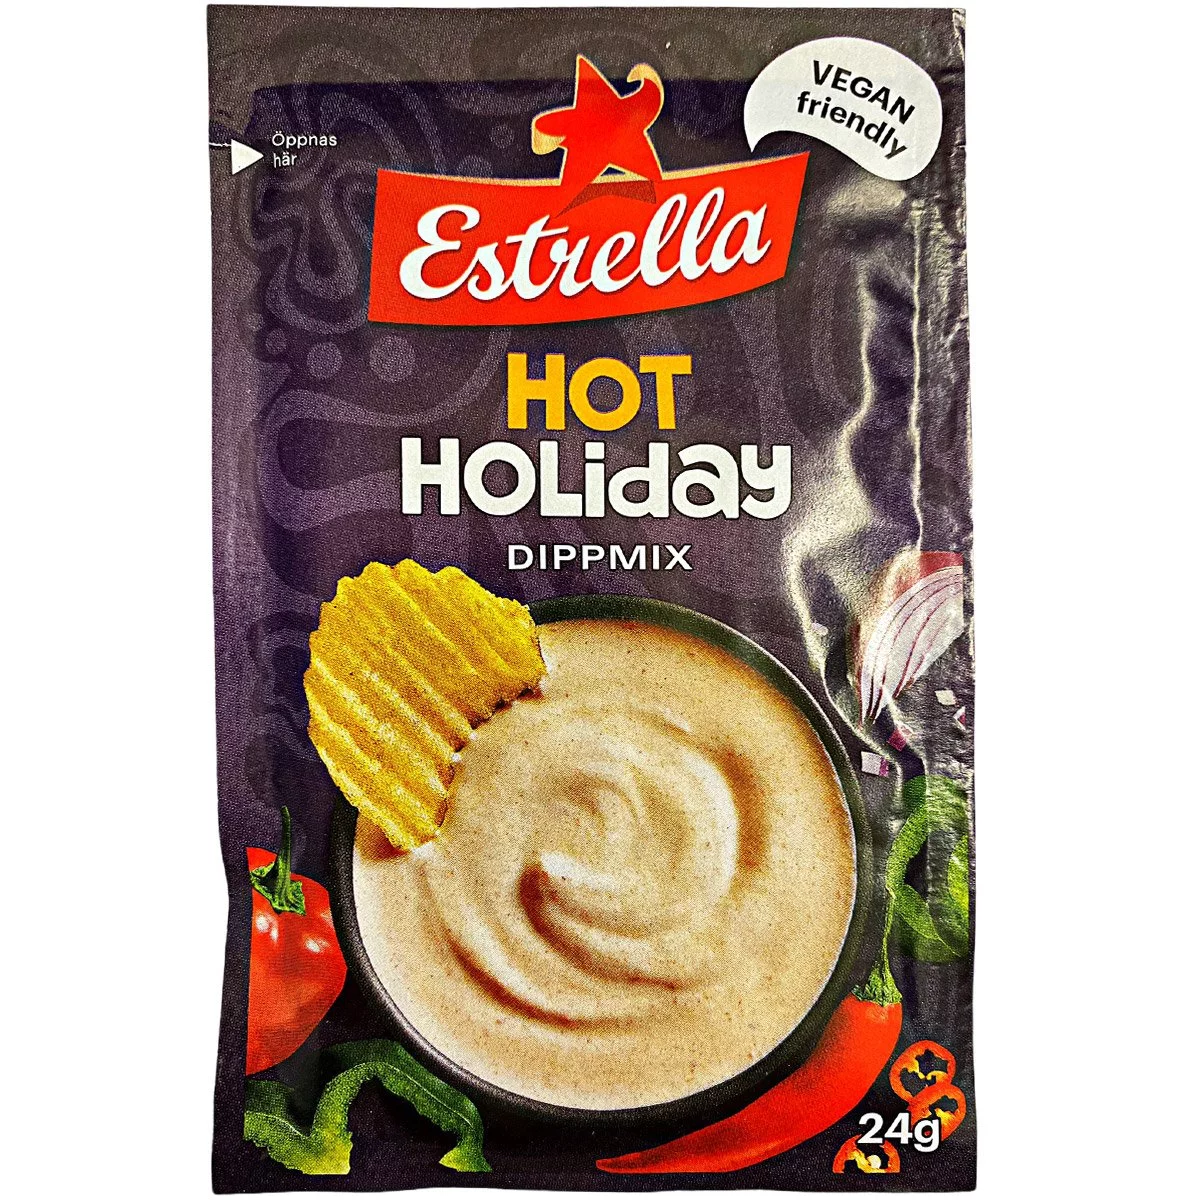 Estrella Hot Holiday Dipmix - (24g) 1